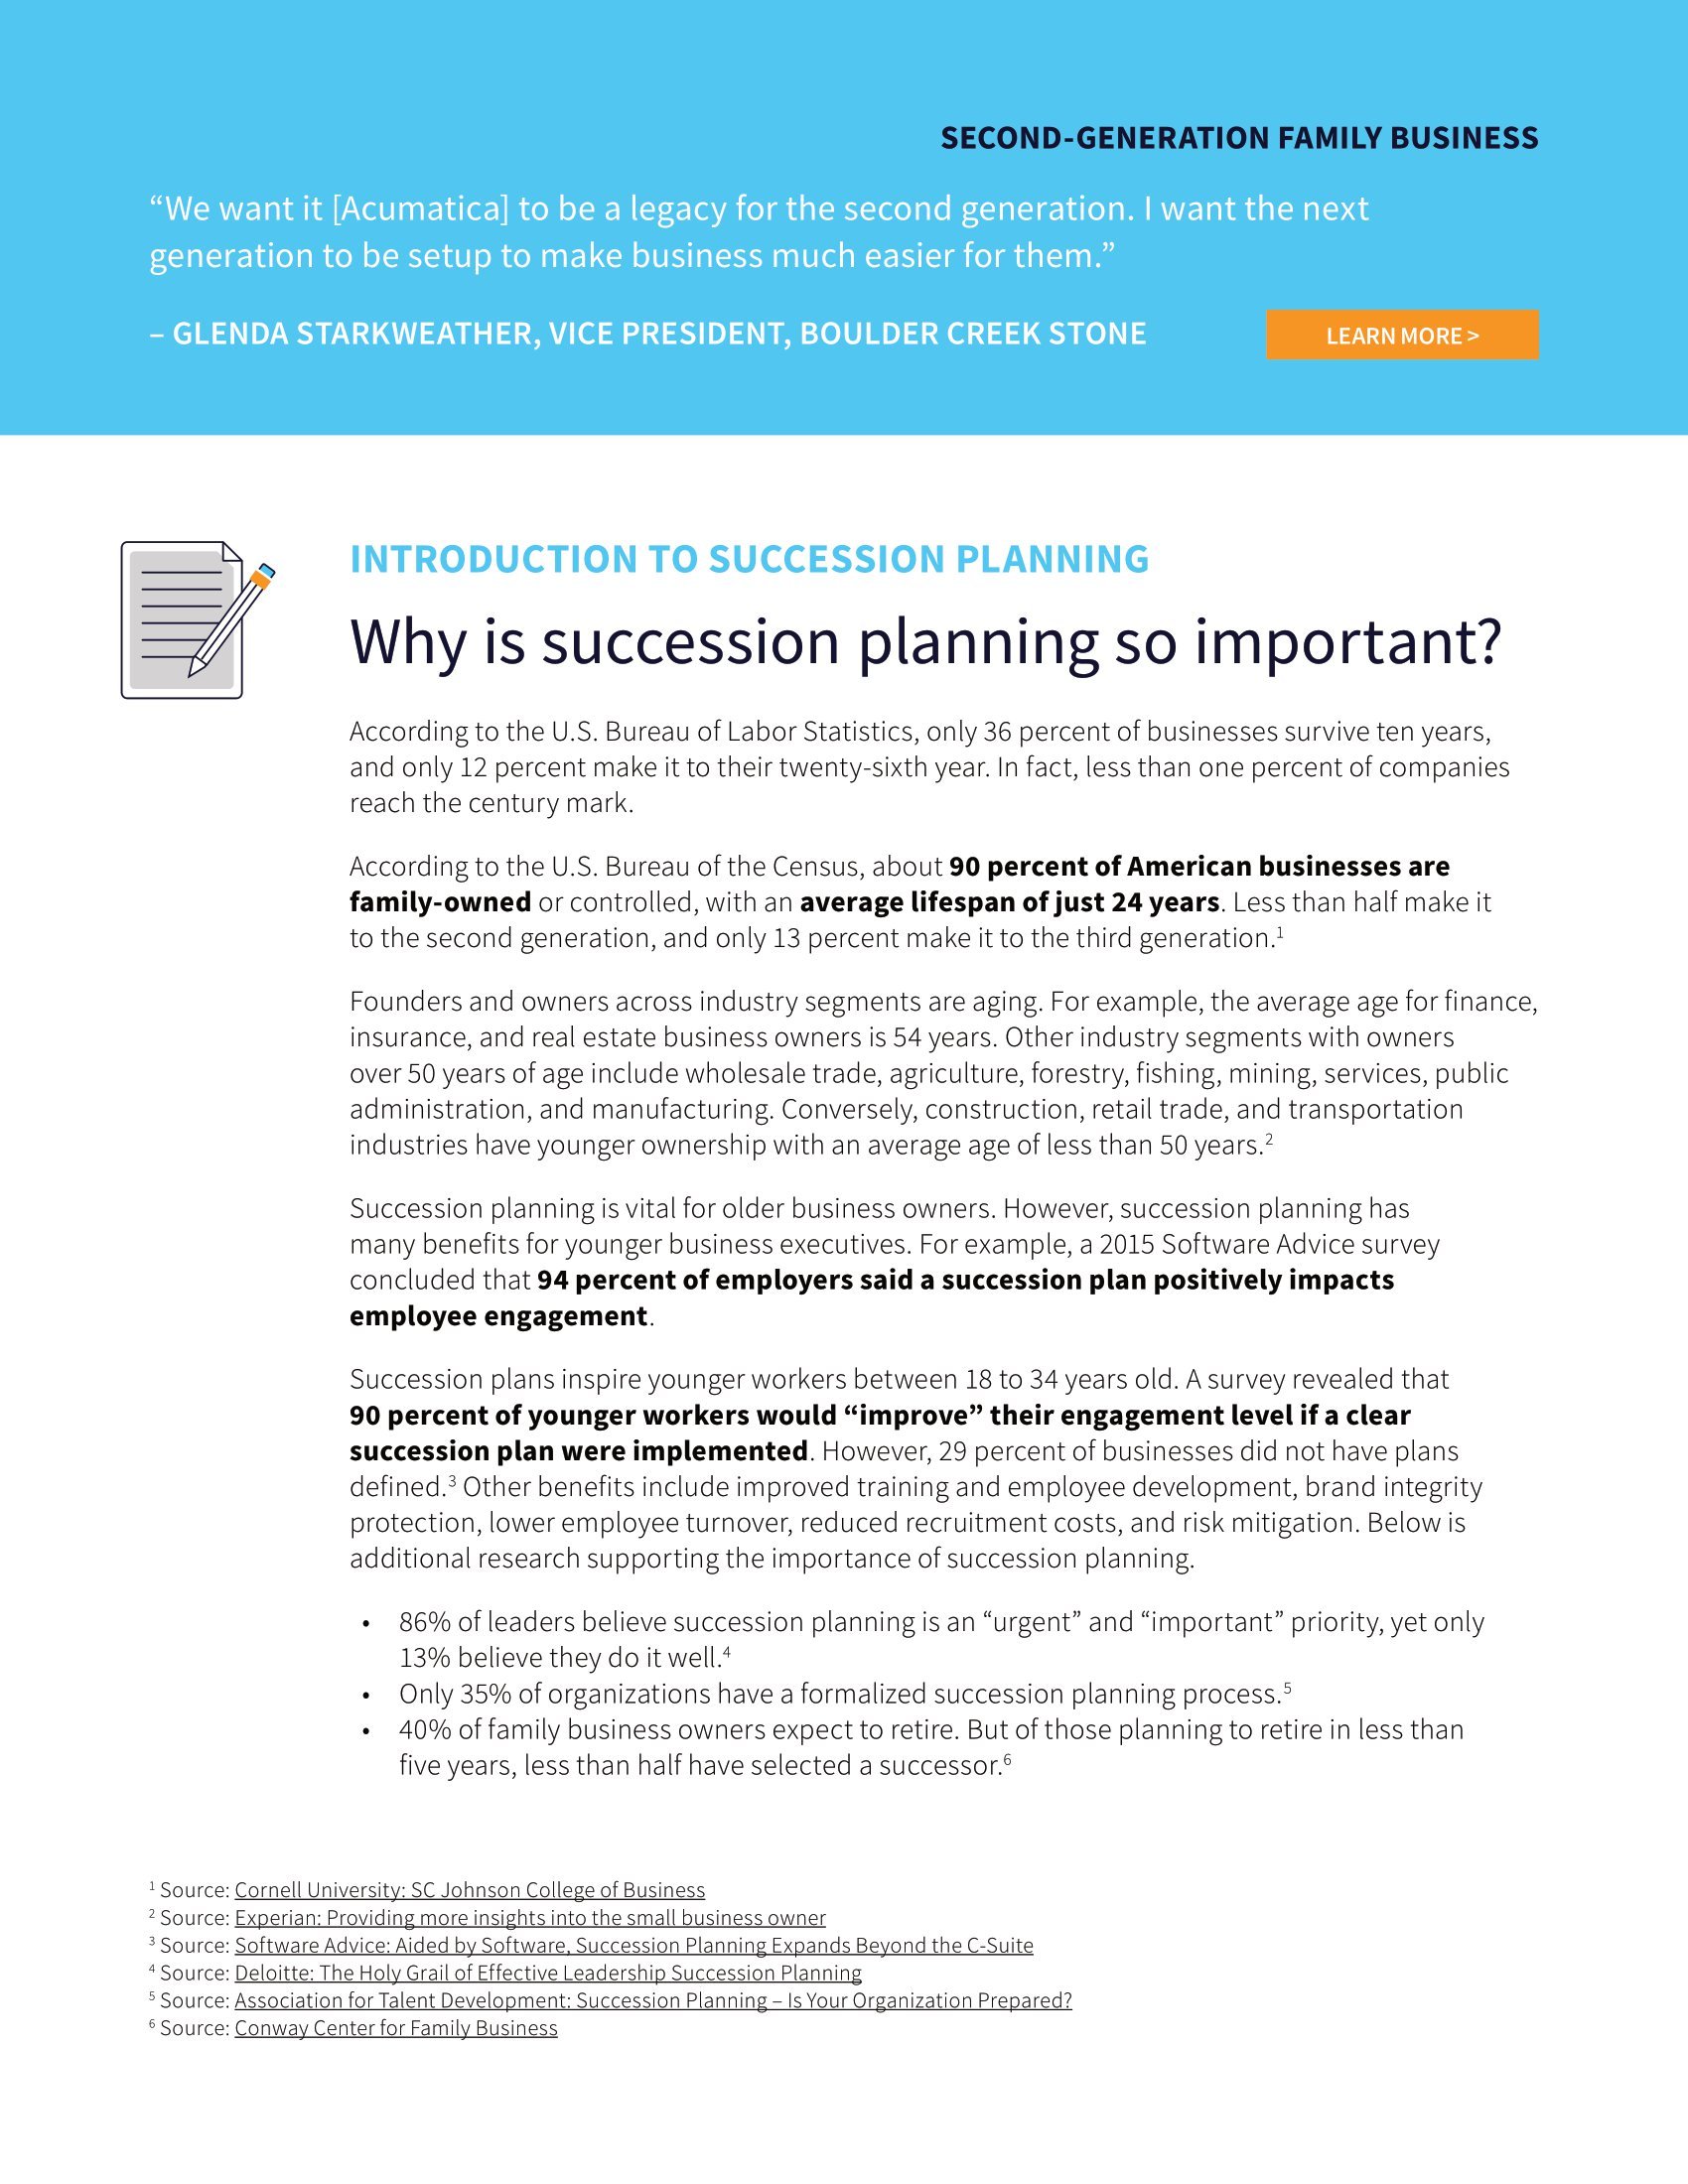 Por qué es tan importante planificar la sucesión (y cómo hacerlo bien), página 1